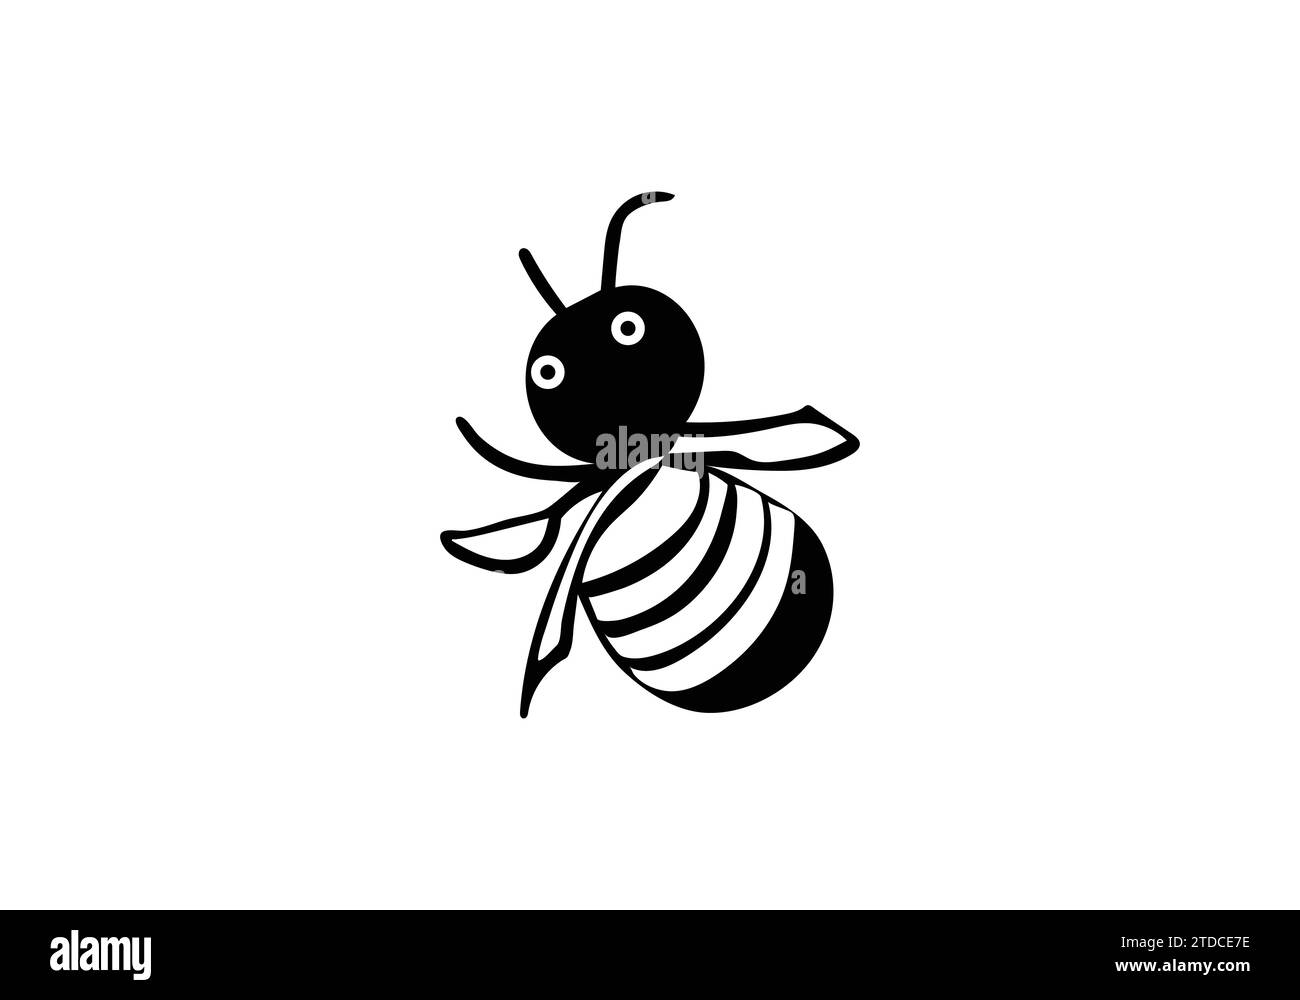 Africanized bee killer bee minimal style icon illustration design Stock Vector